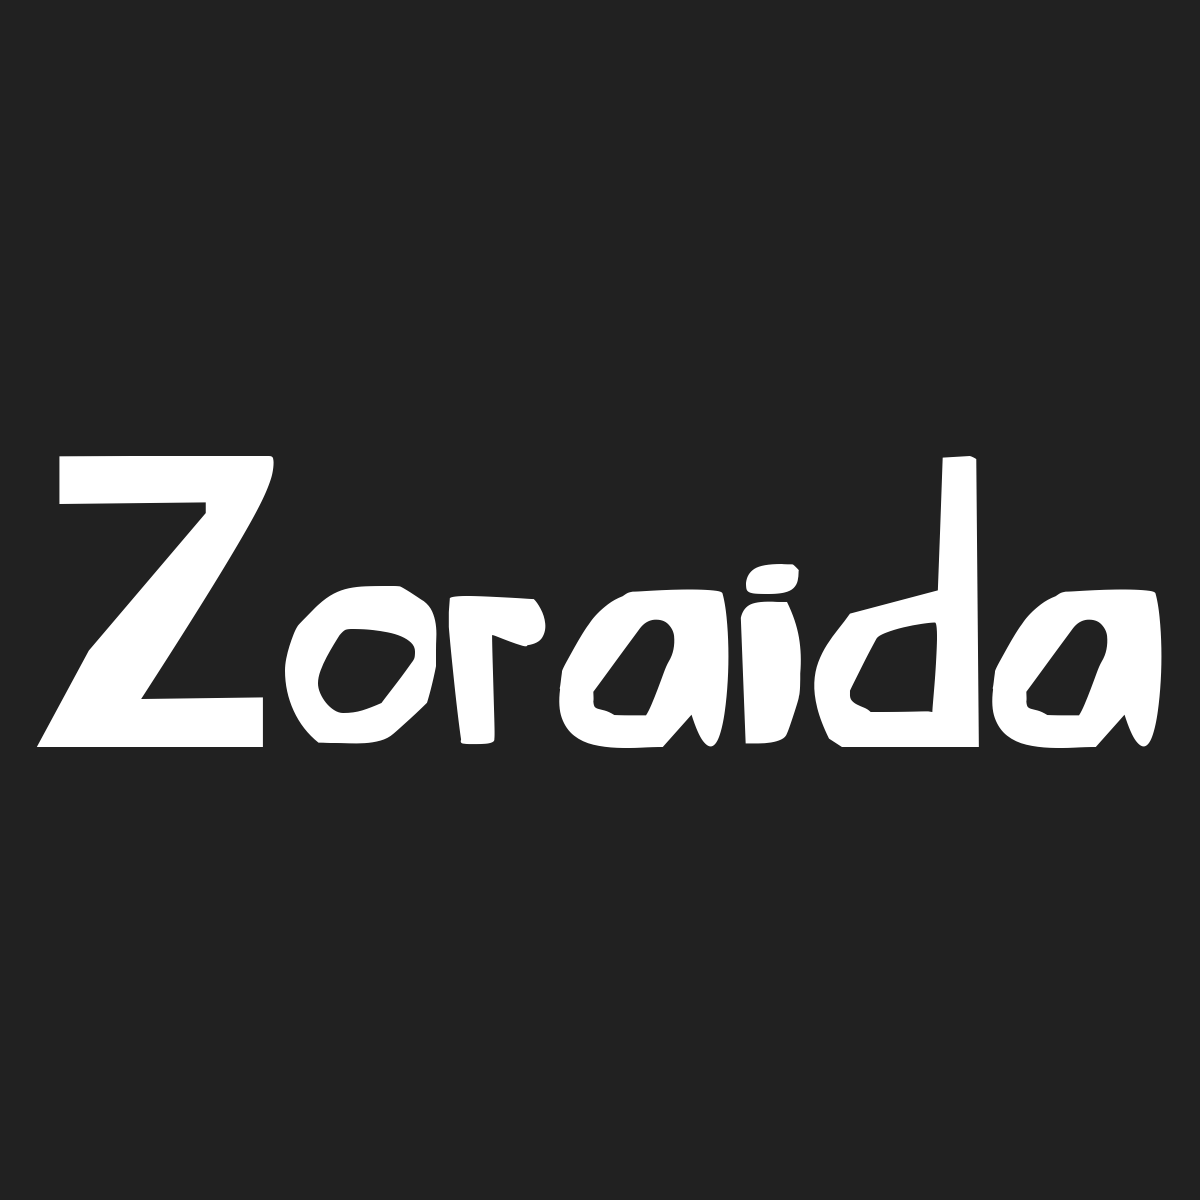 Zoraida Significado Del Nombre De Mujer Zoraida